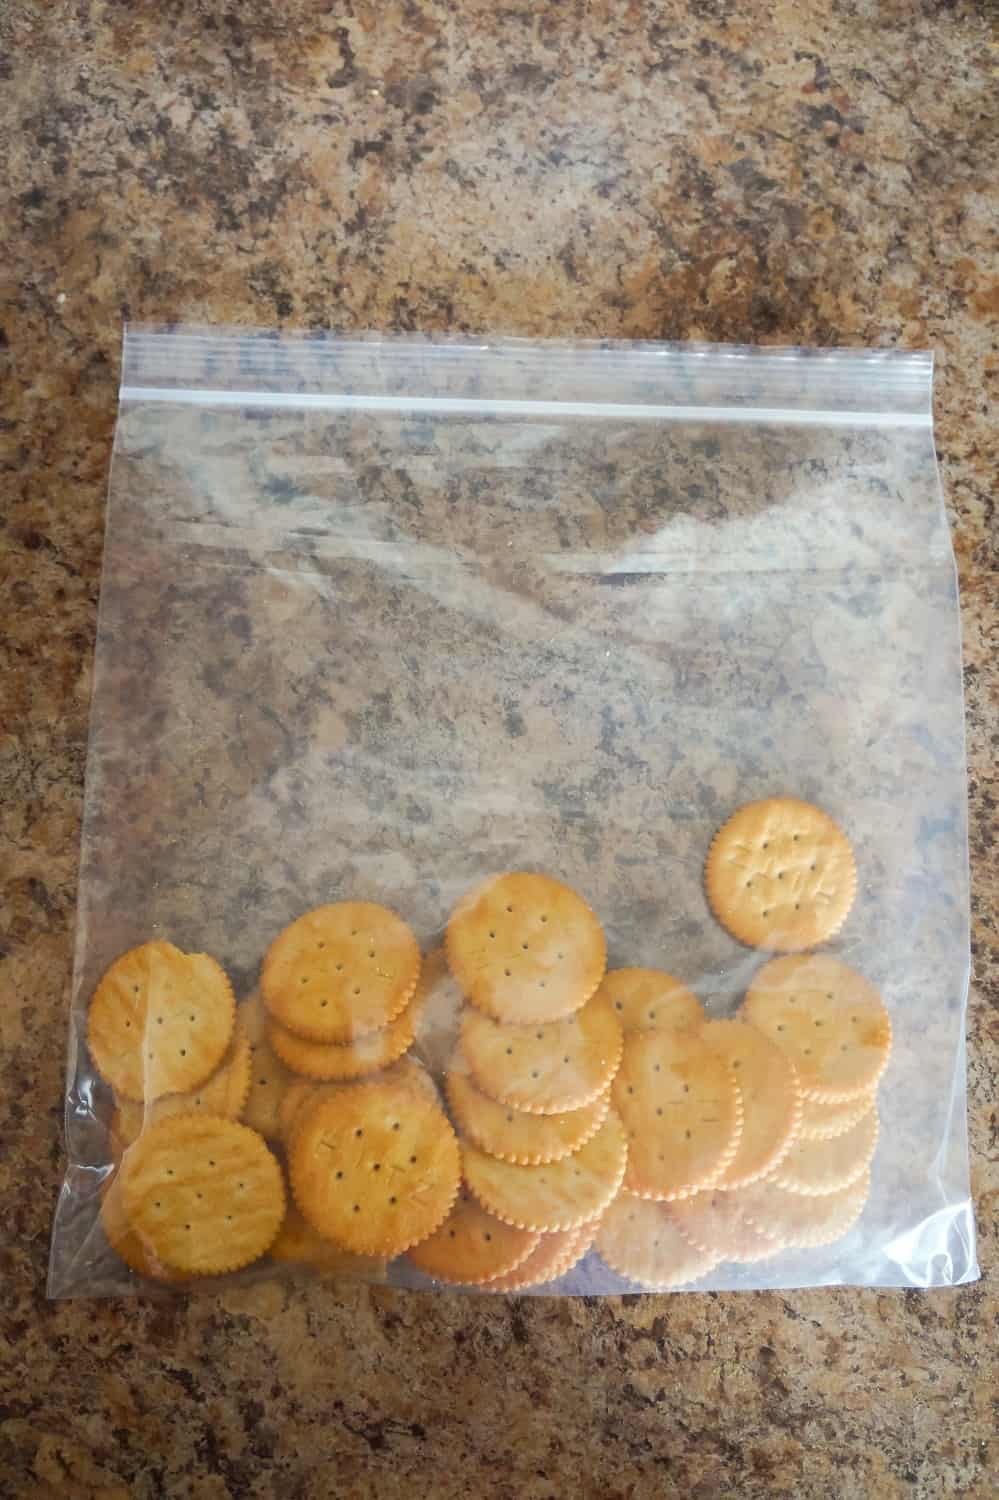 Ritz crackers in a large ziploc bag